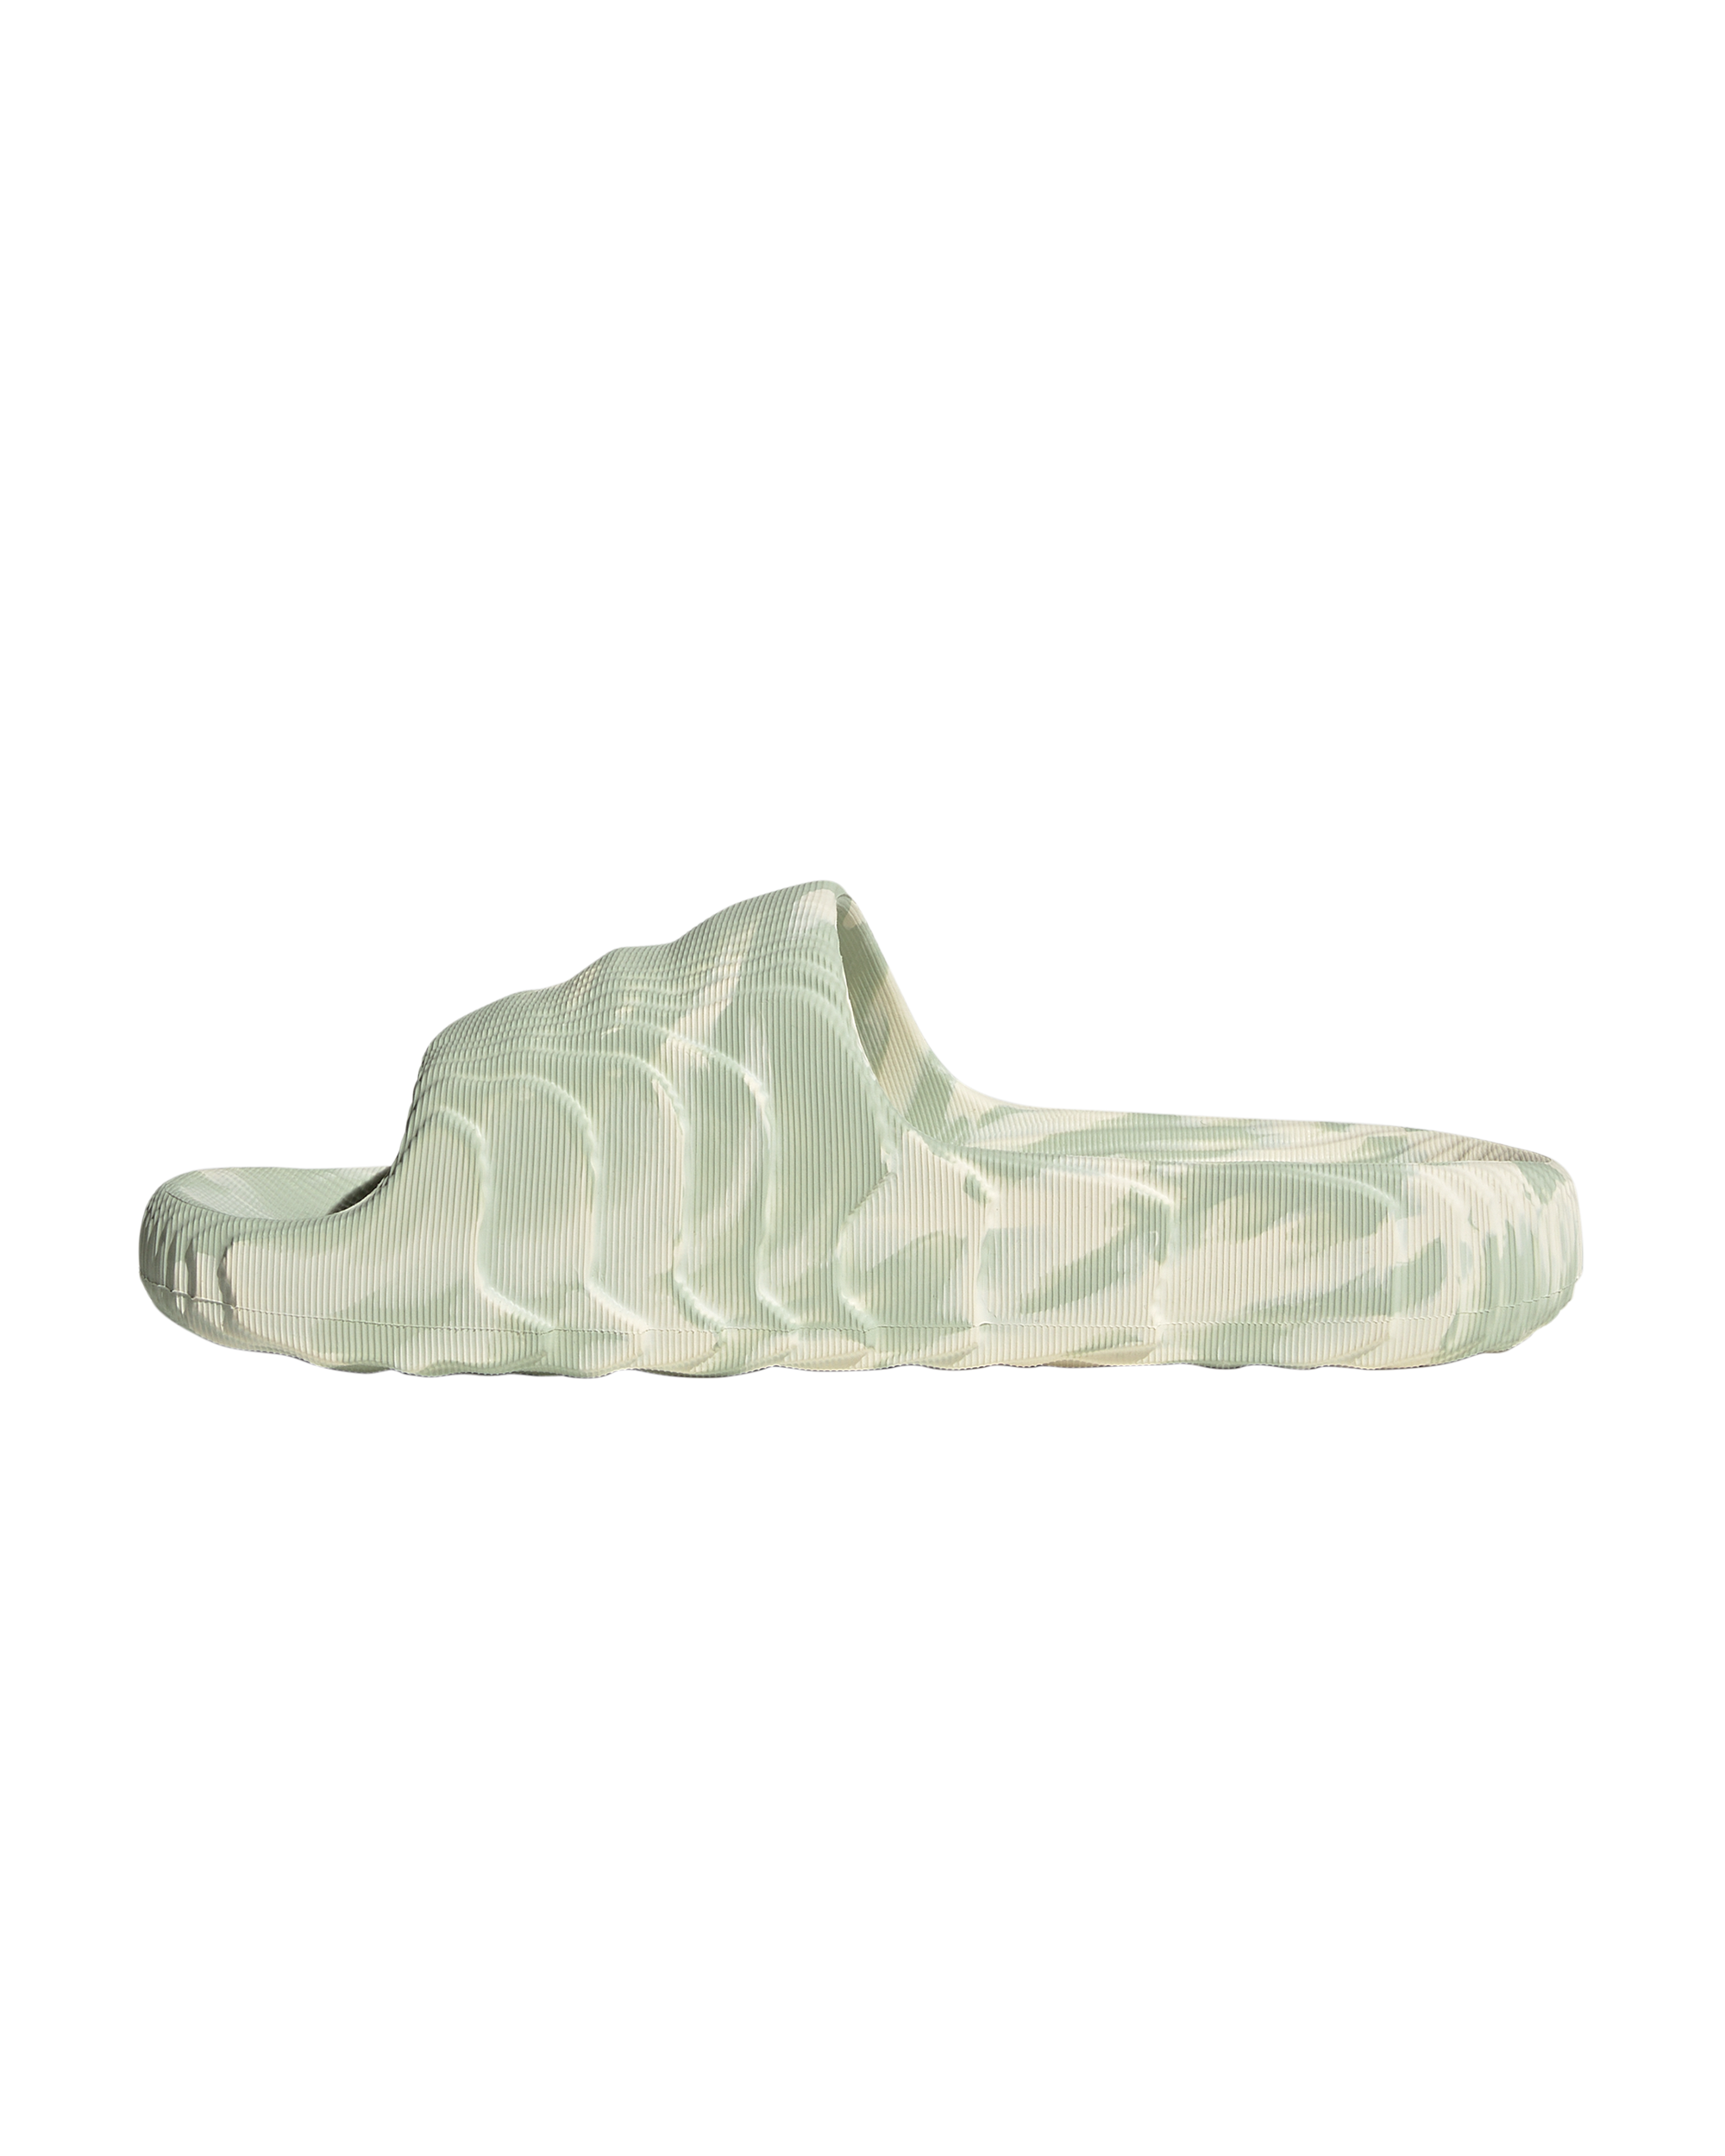 Adilette 22 Slides - Cream White / Linen Green